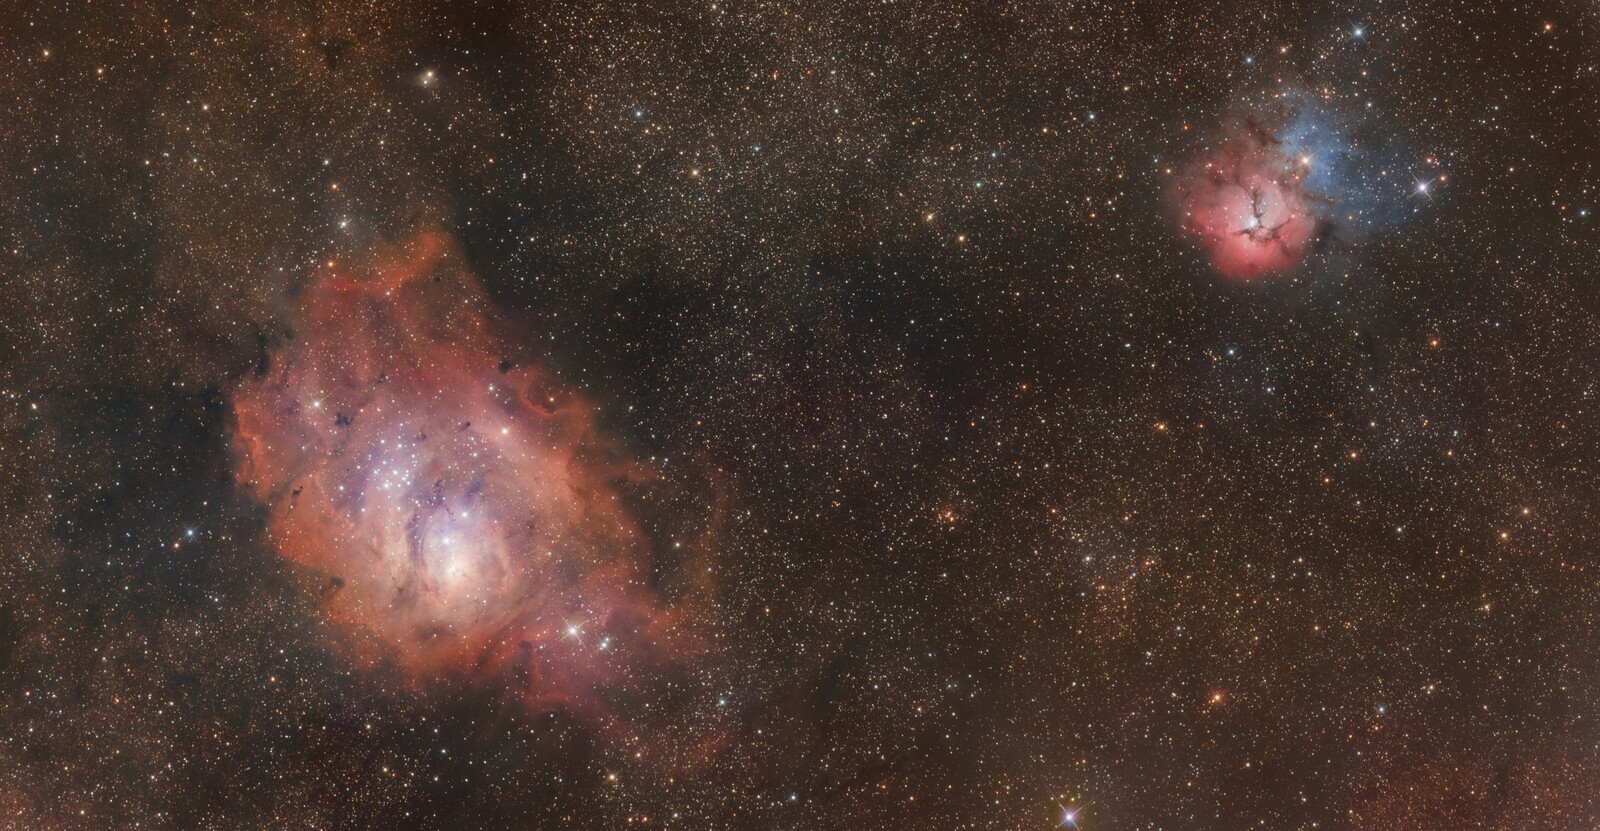 Trifid Nebula (M20) and Lagoon Nebula (M8)